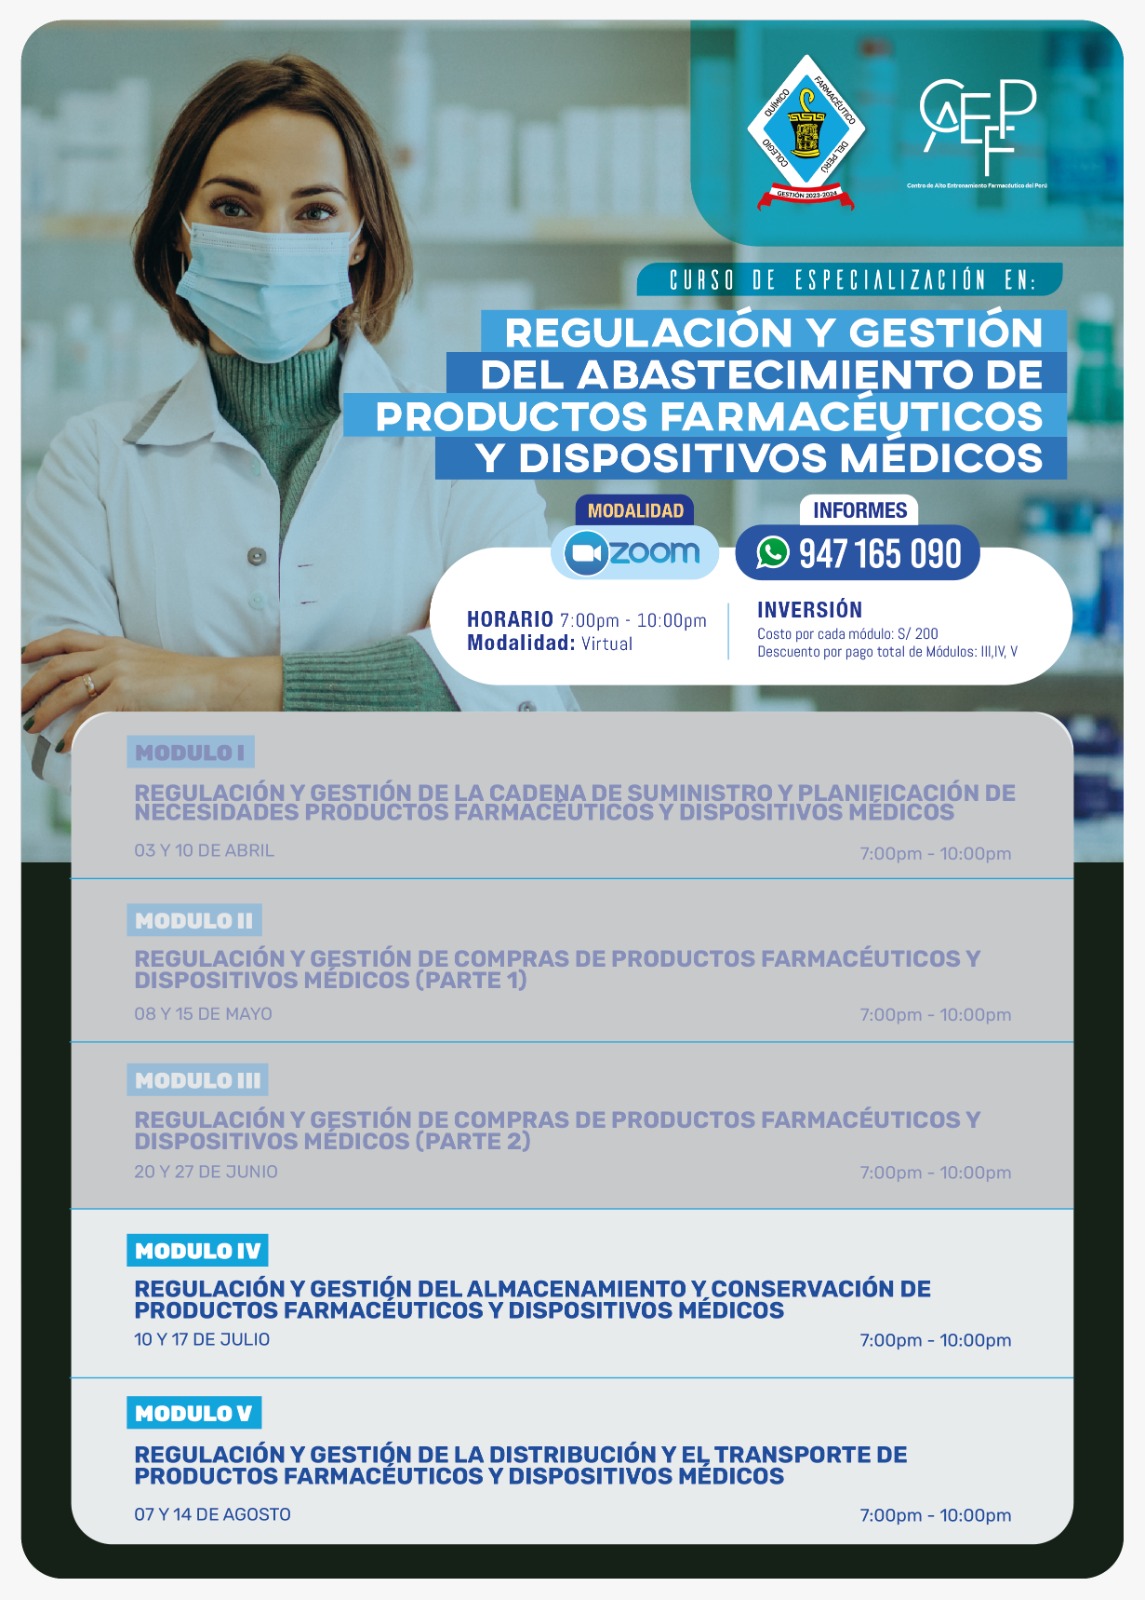 Regulación y Gestión del Abastecimiento de Productos Farmacéuticos y Dispositivos Médicos Módulo IV, dedicado a Químico Farmacéuticos